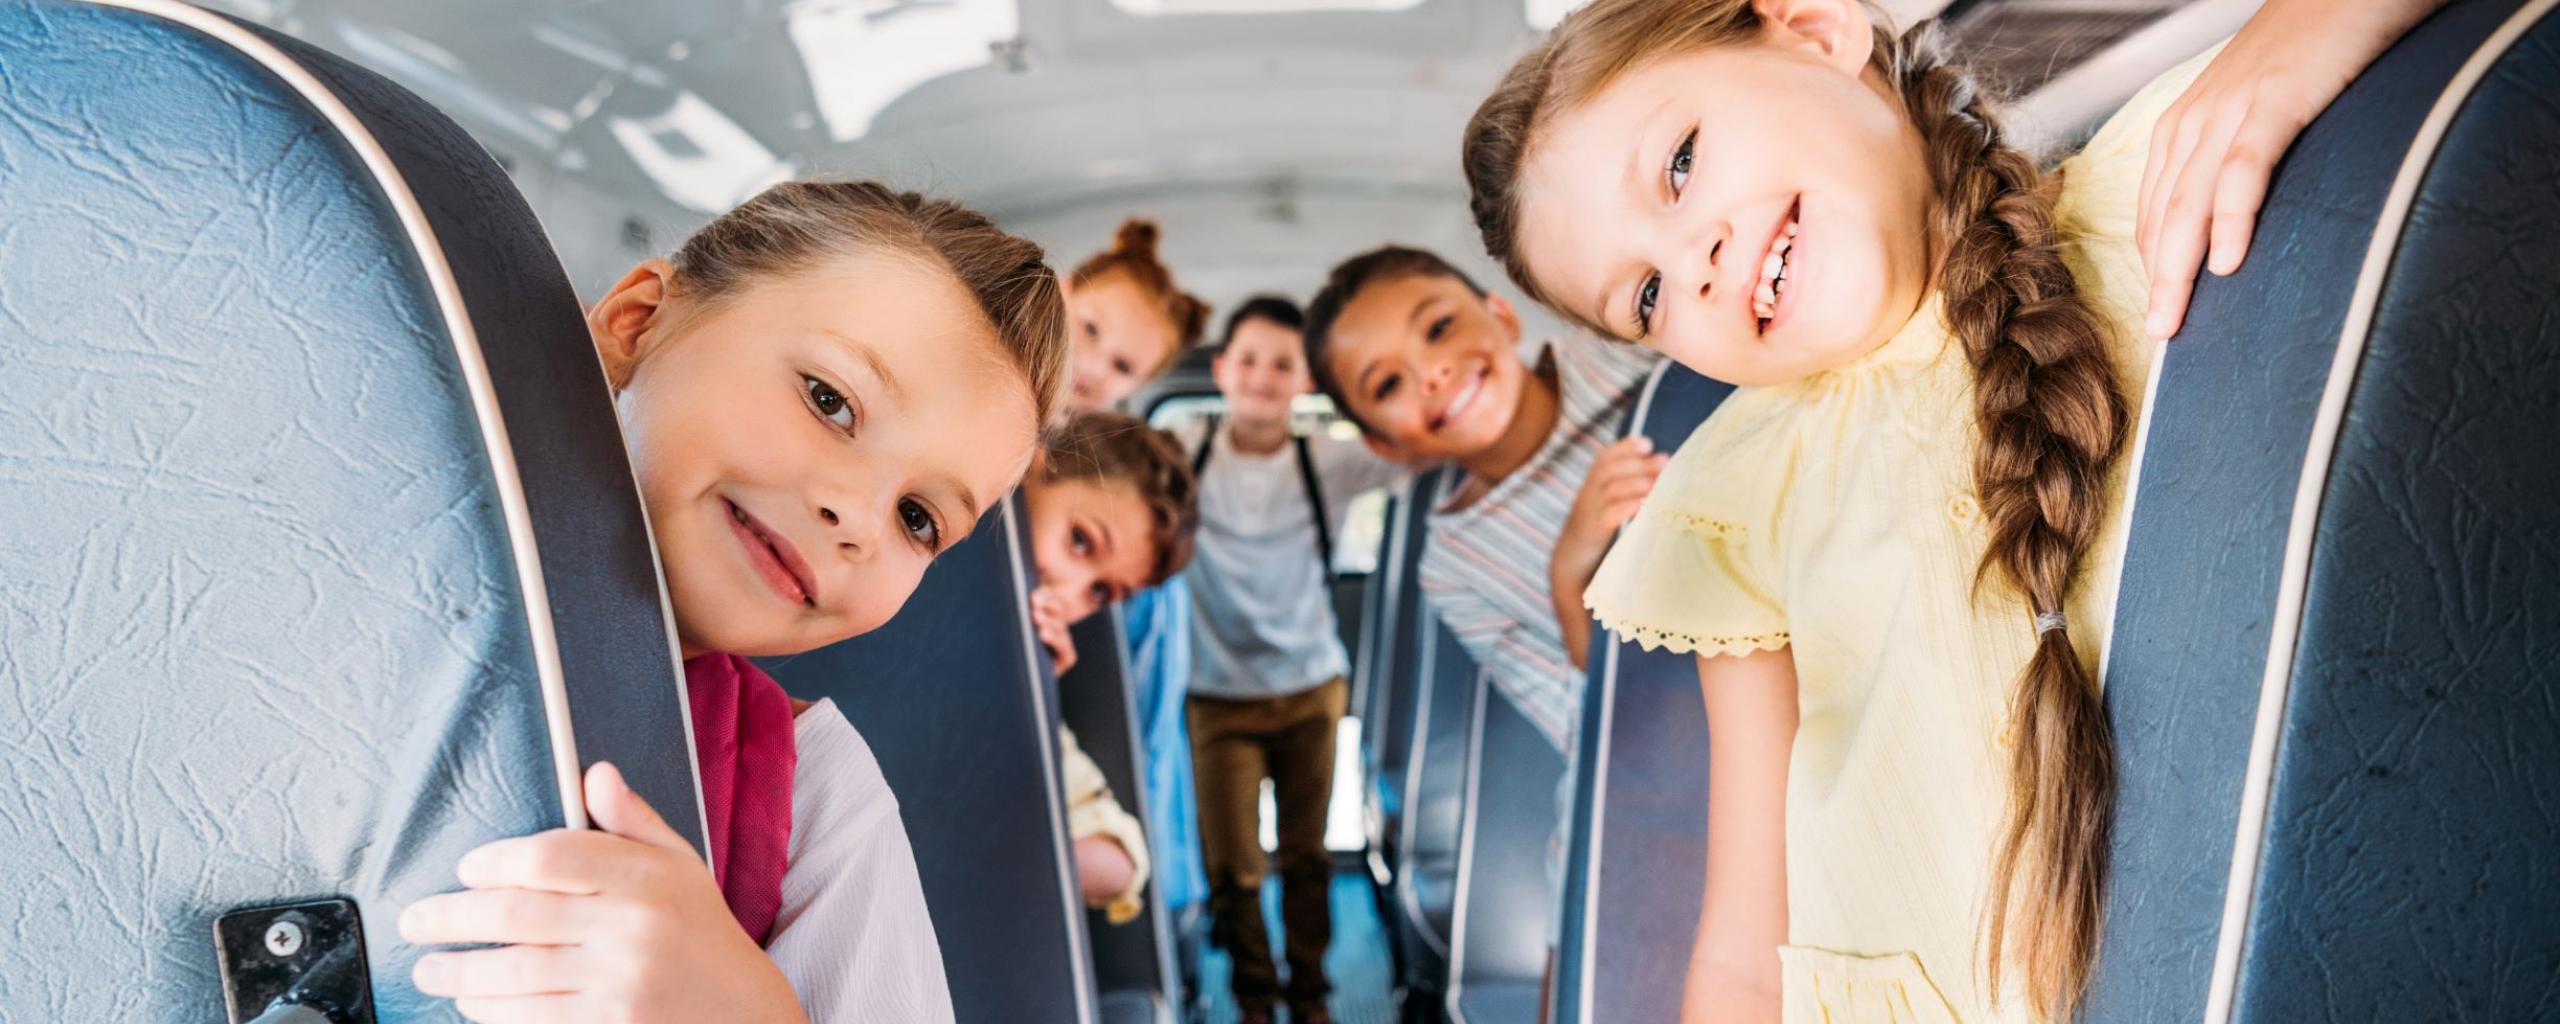 Groep jonge kinderen in een bus.